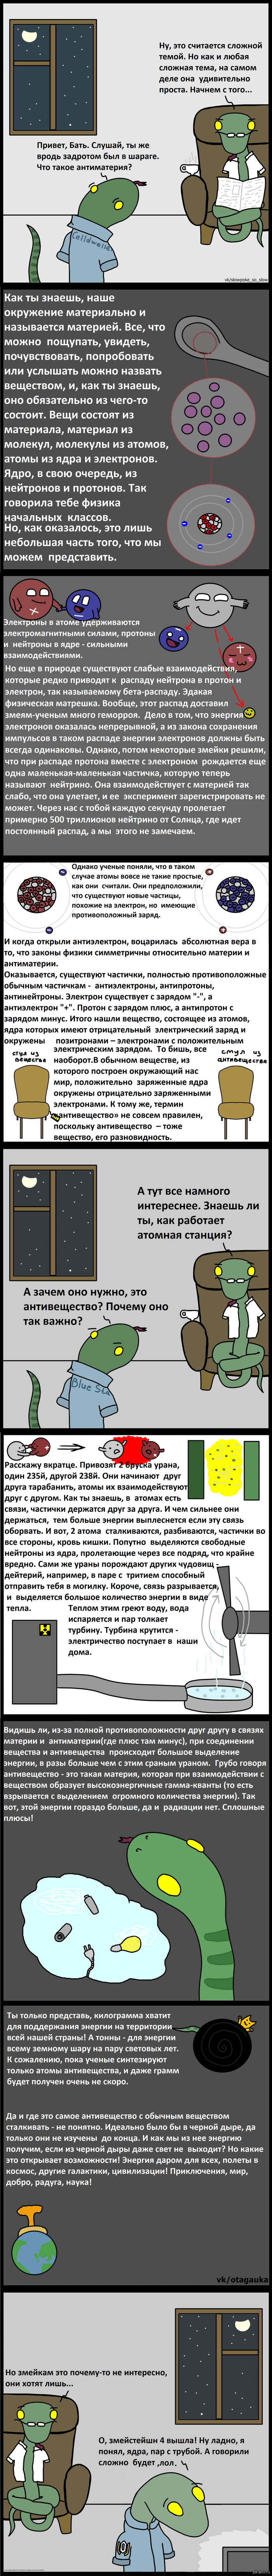 http://s.pikabu.ru/post_img/2013/11/21/12/1385061269_218301262.png